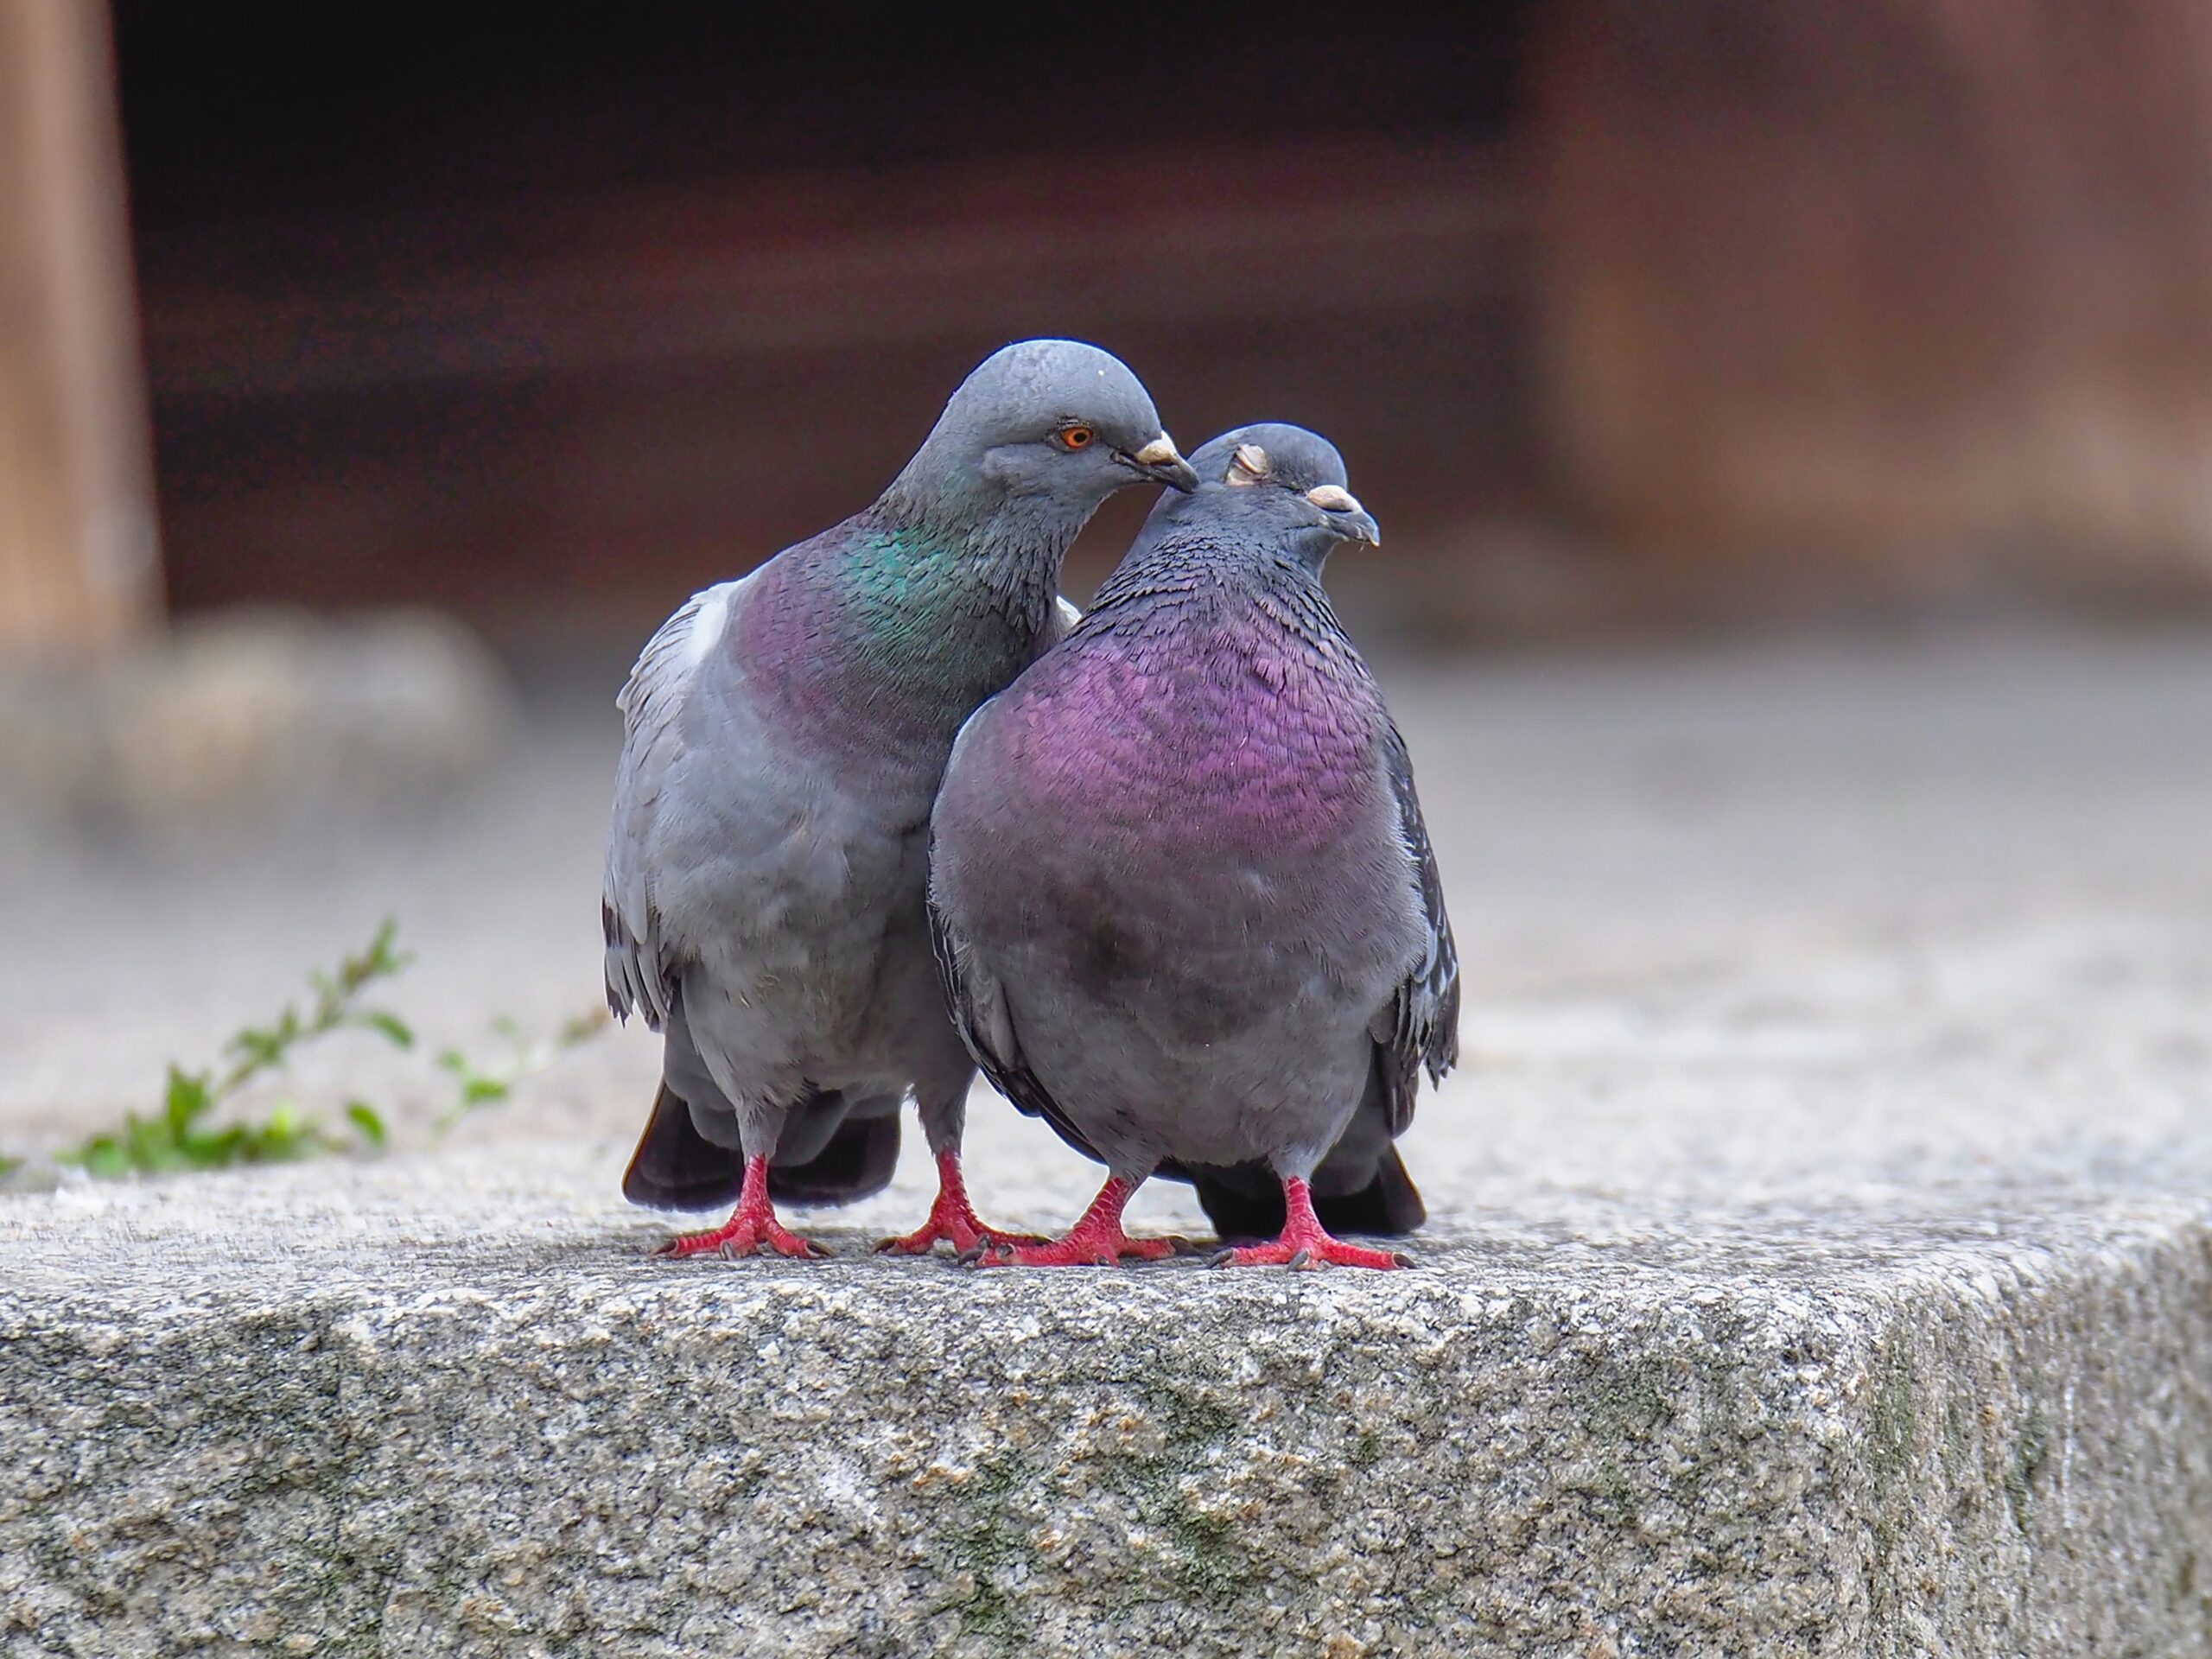 ¿Cómo encuentran siempre las palomas migratorias el camino de regreso a casa?